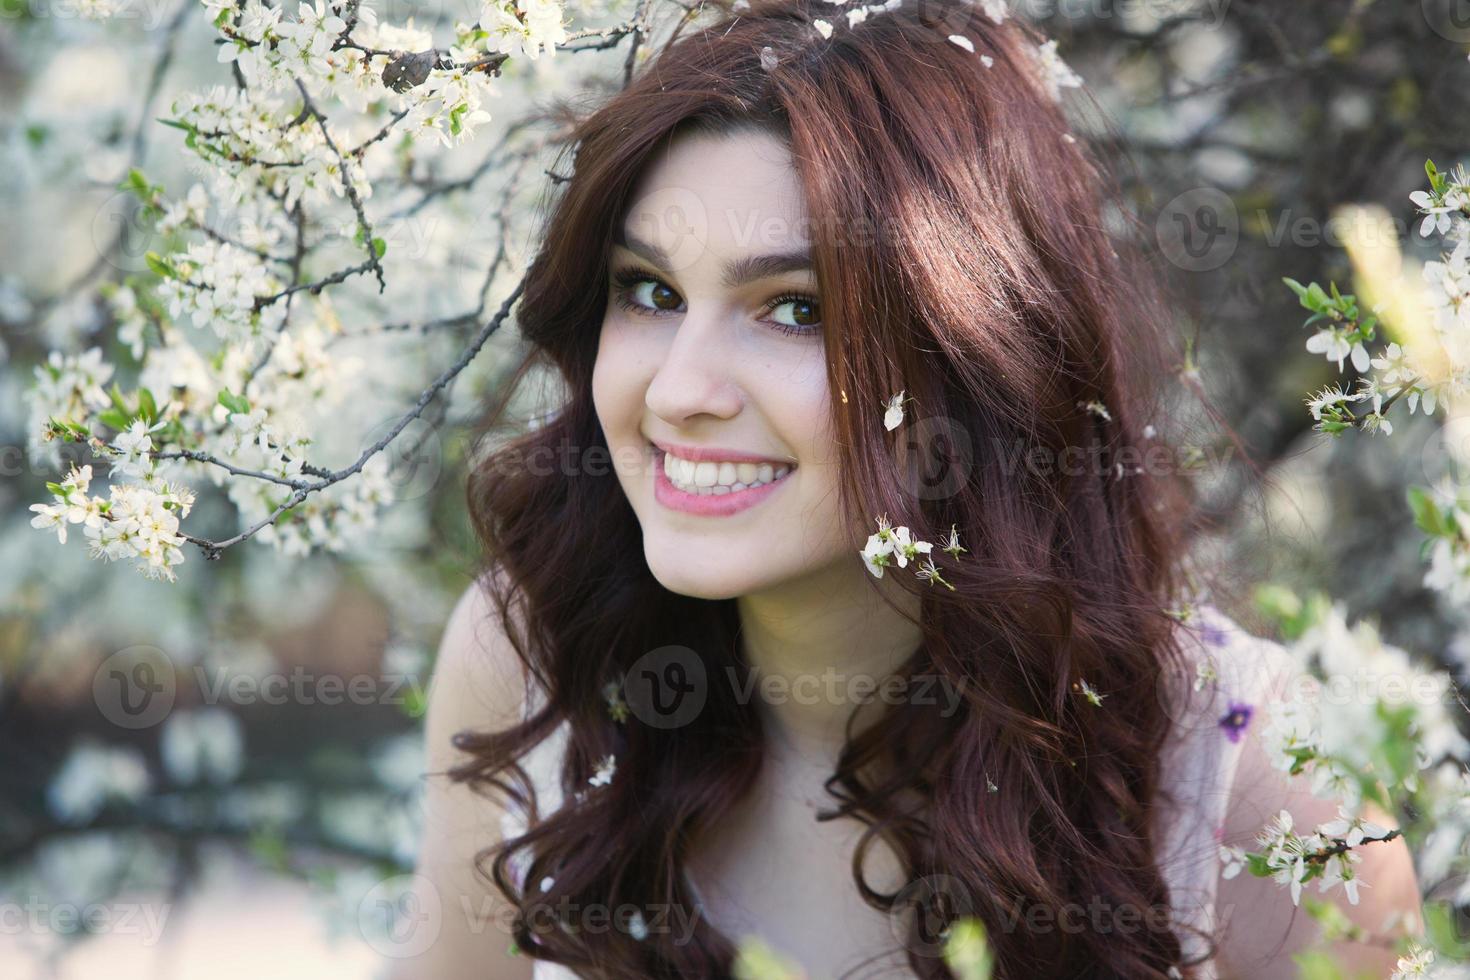 linda garota europeia branca com pele limpa no parque com árvores floridas foto